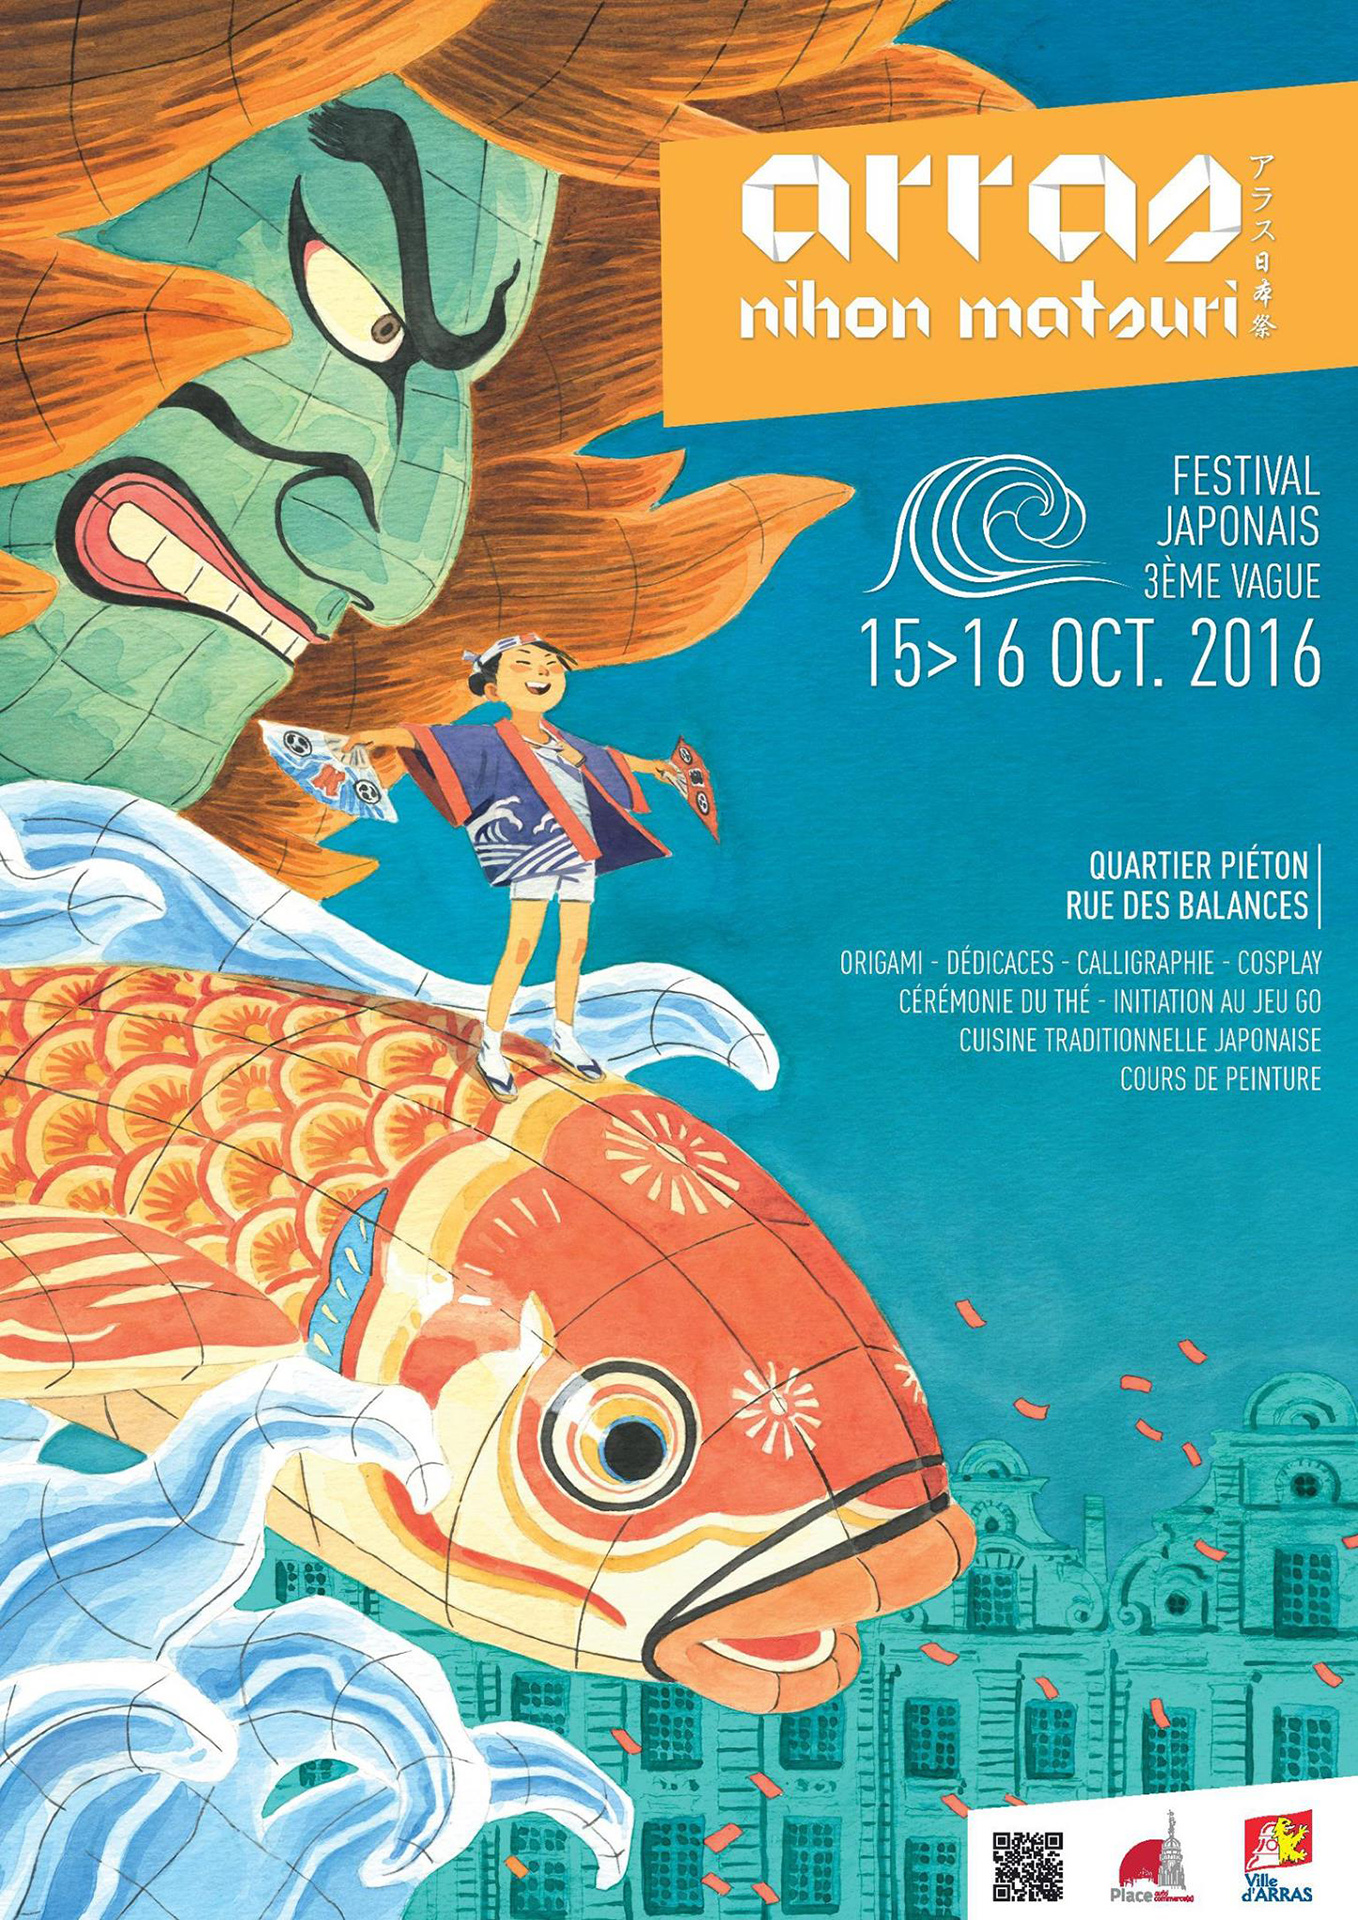 poster for Arras nihon matsuri festival